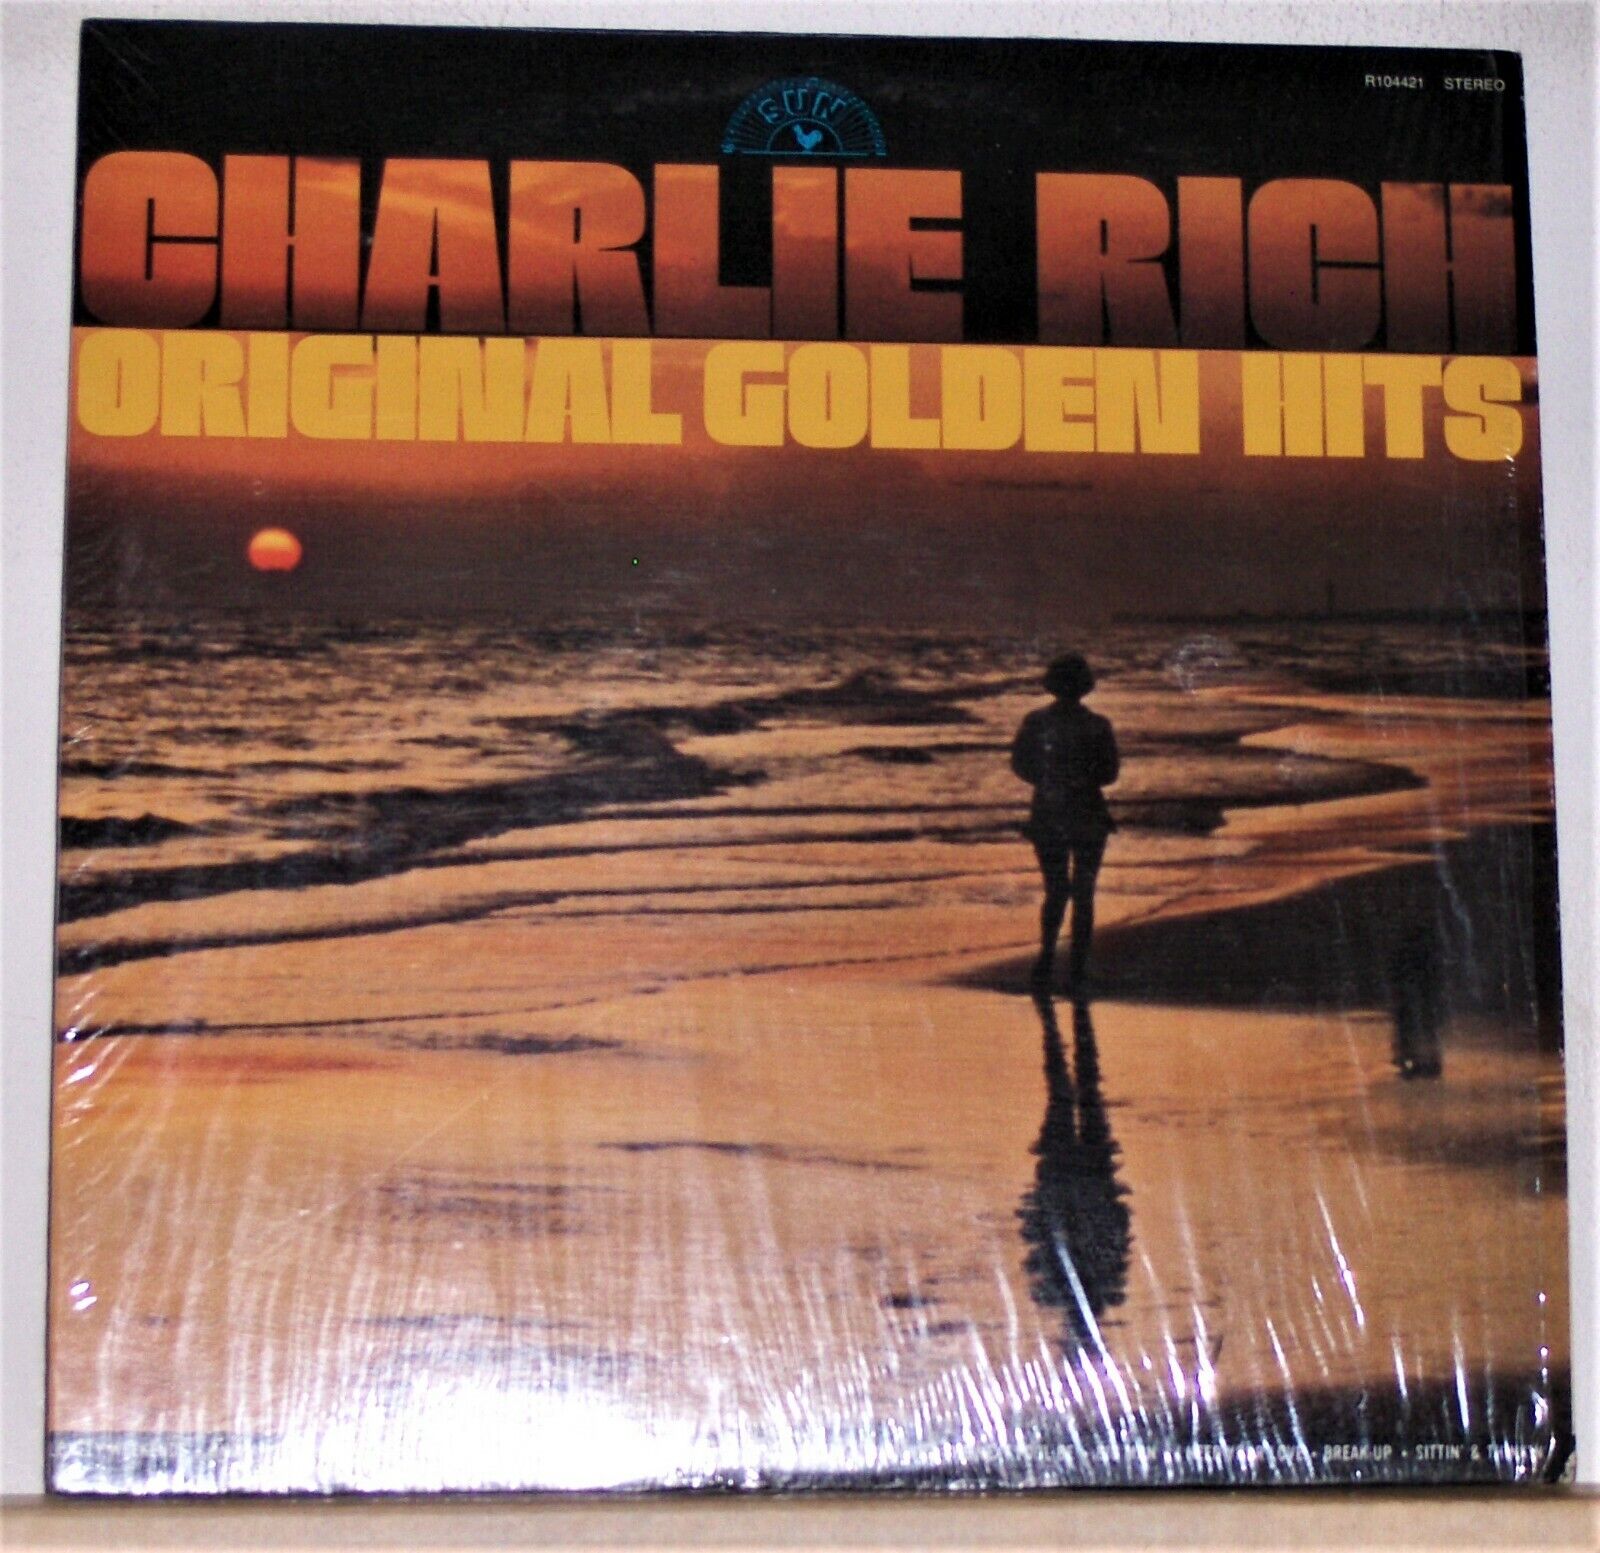 Charlie Rich ‎- Original Golden Hits - 1974 Vinyl LP Record Album - Excellent